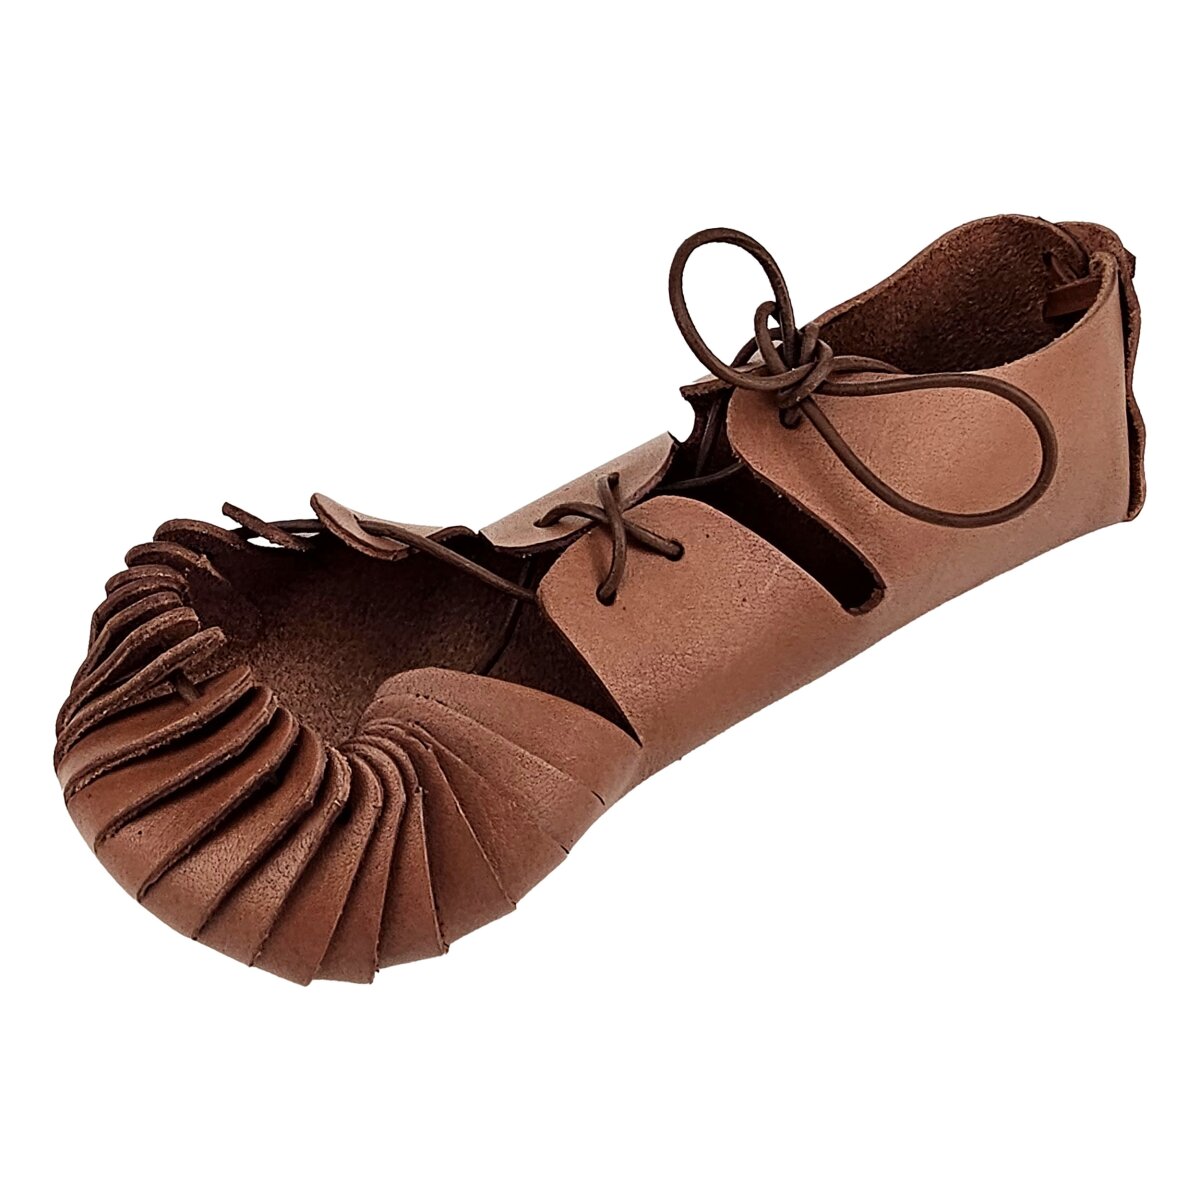 Chaussures Viking type Jorvik avec double semelle cloutée Marron, 149,00 €